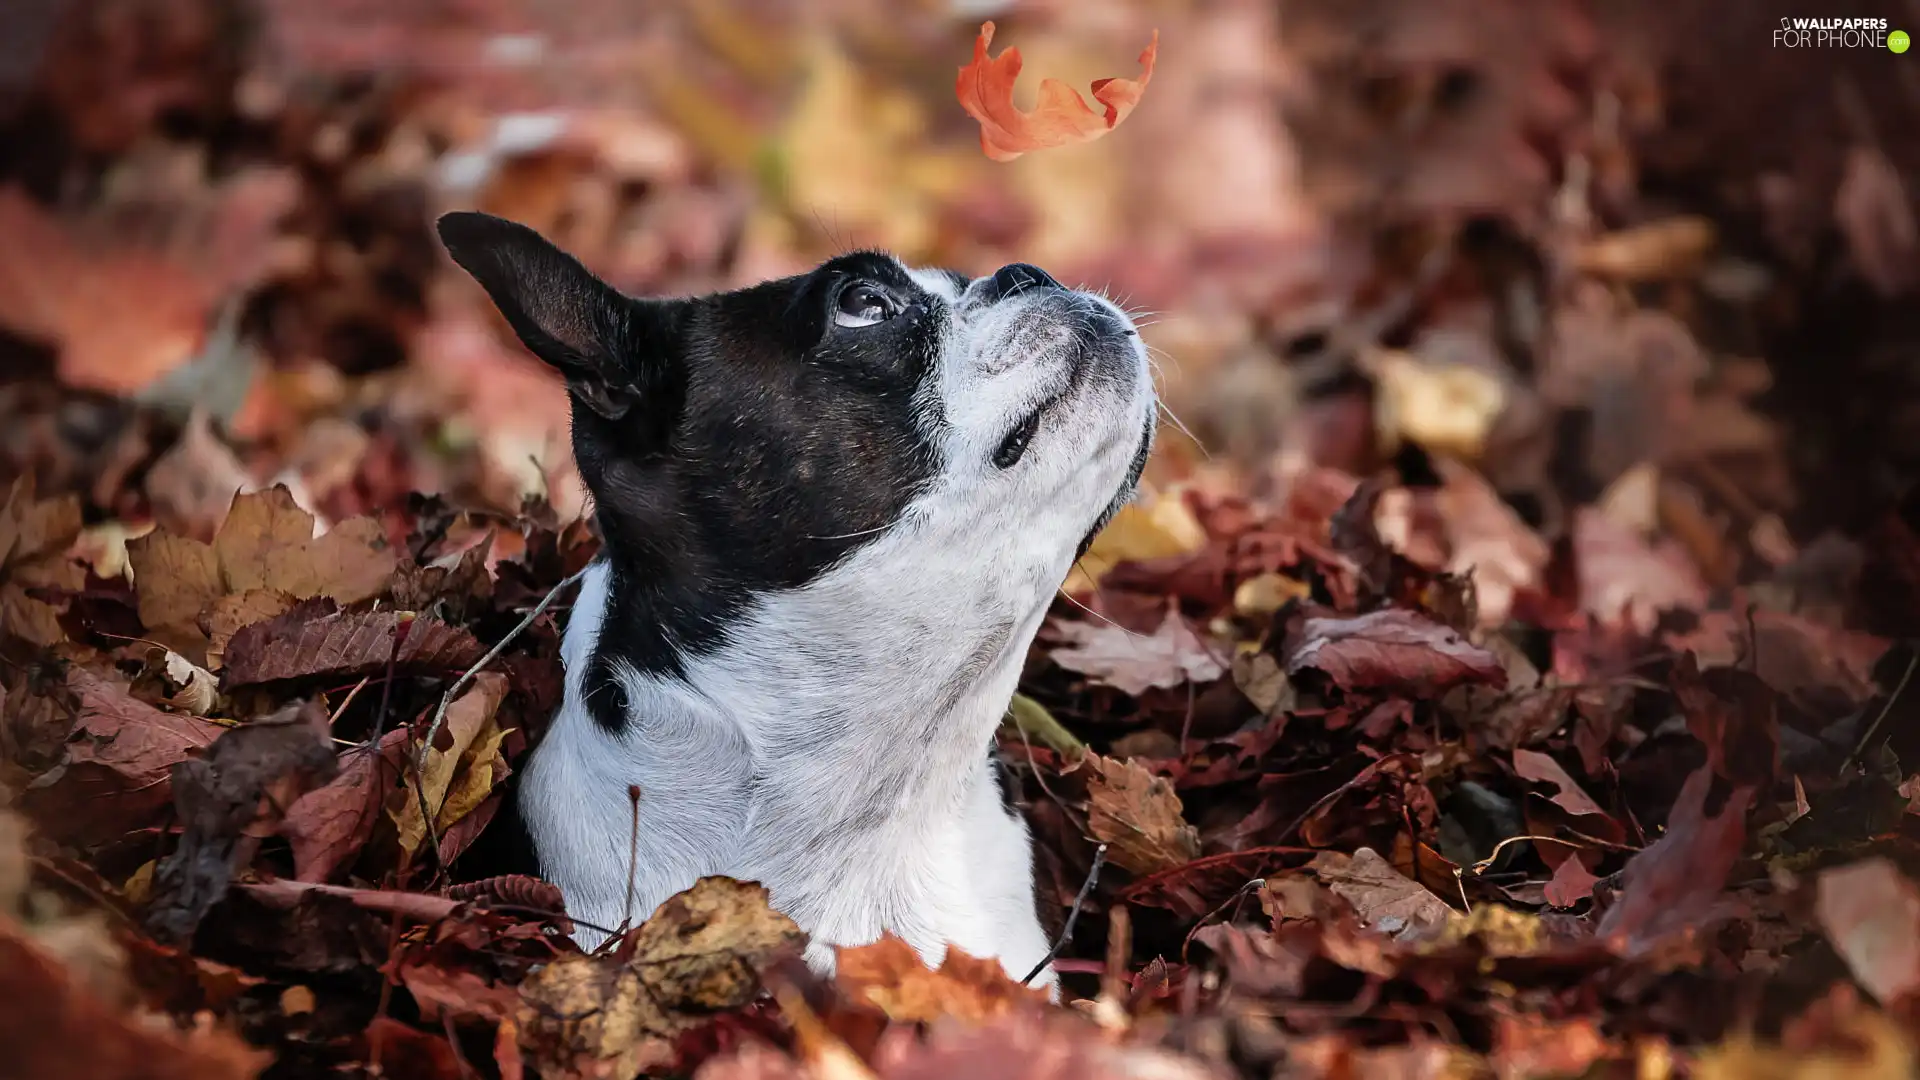 leaf, dog, Boston Terrier